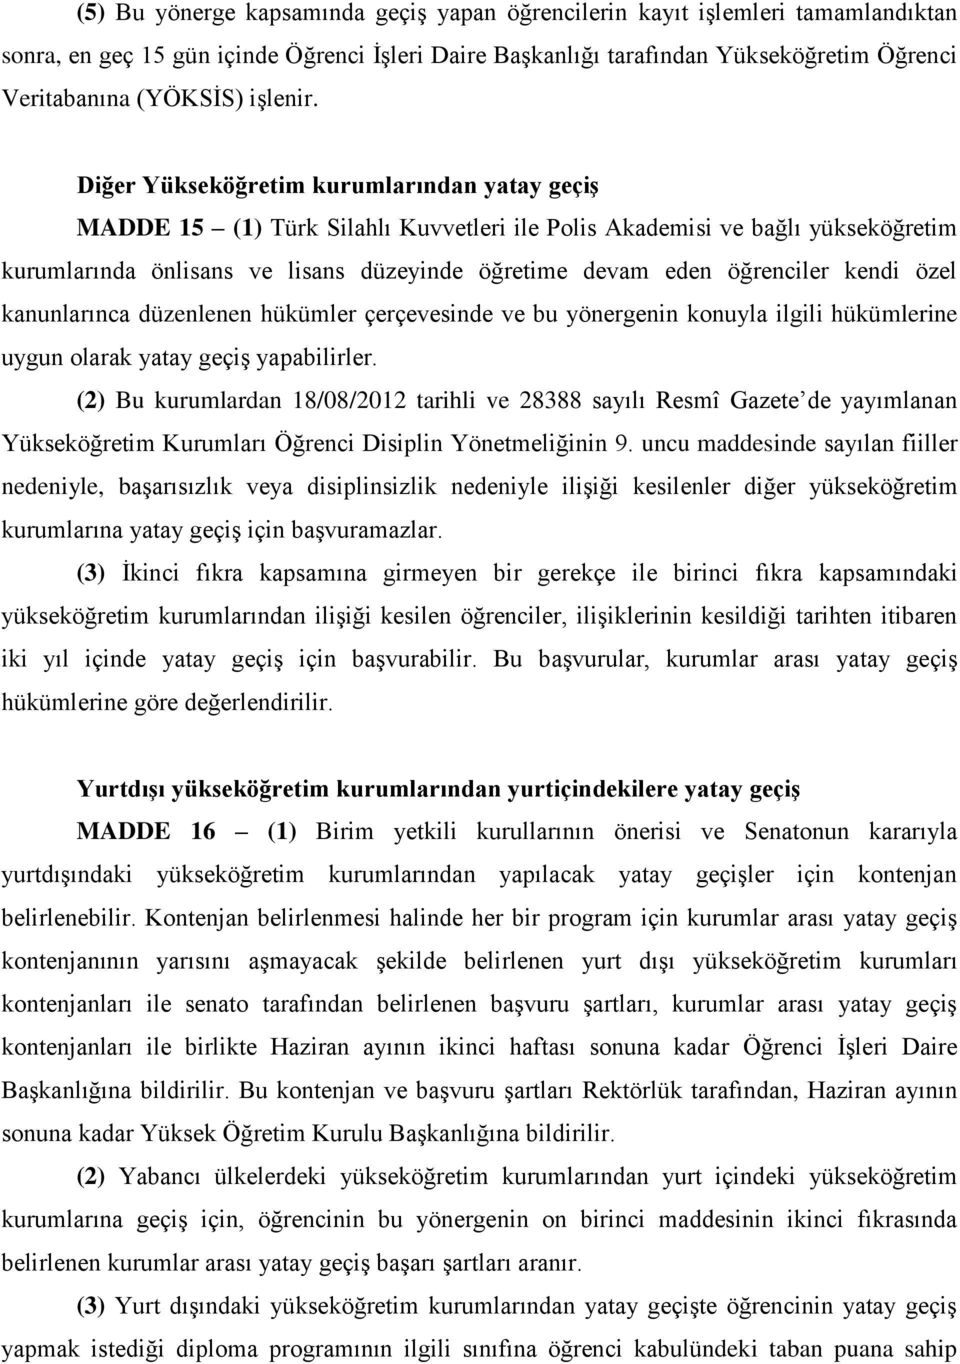 Diğer Yükseköğretim kurumlarından yatay geçiş MADDE 15 (1) Türk Silahlı Kuvvetleri ile Polis Akademisi ve bağlı yükseköğretim kurumlarında önlisans ve lisans düzeyinde öğretime devam eden öğrenciler